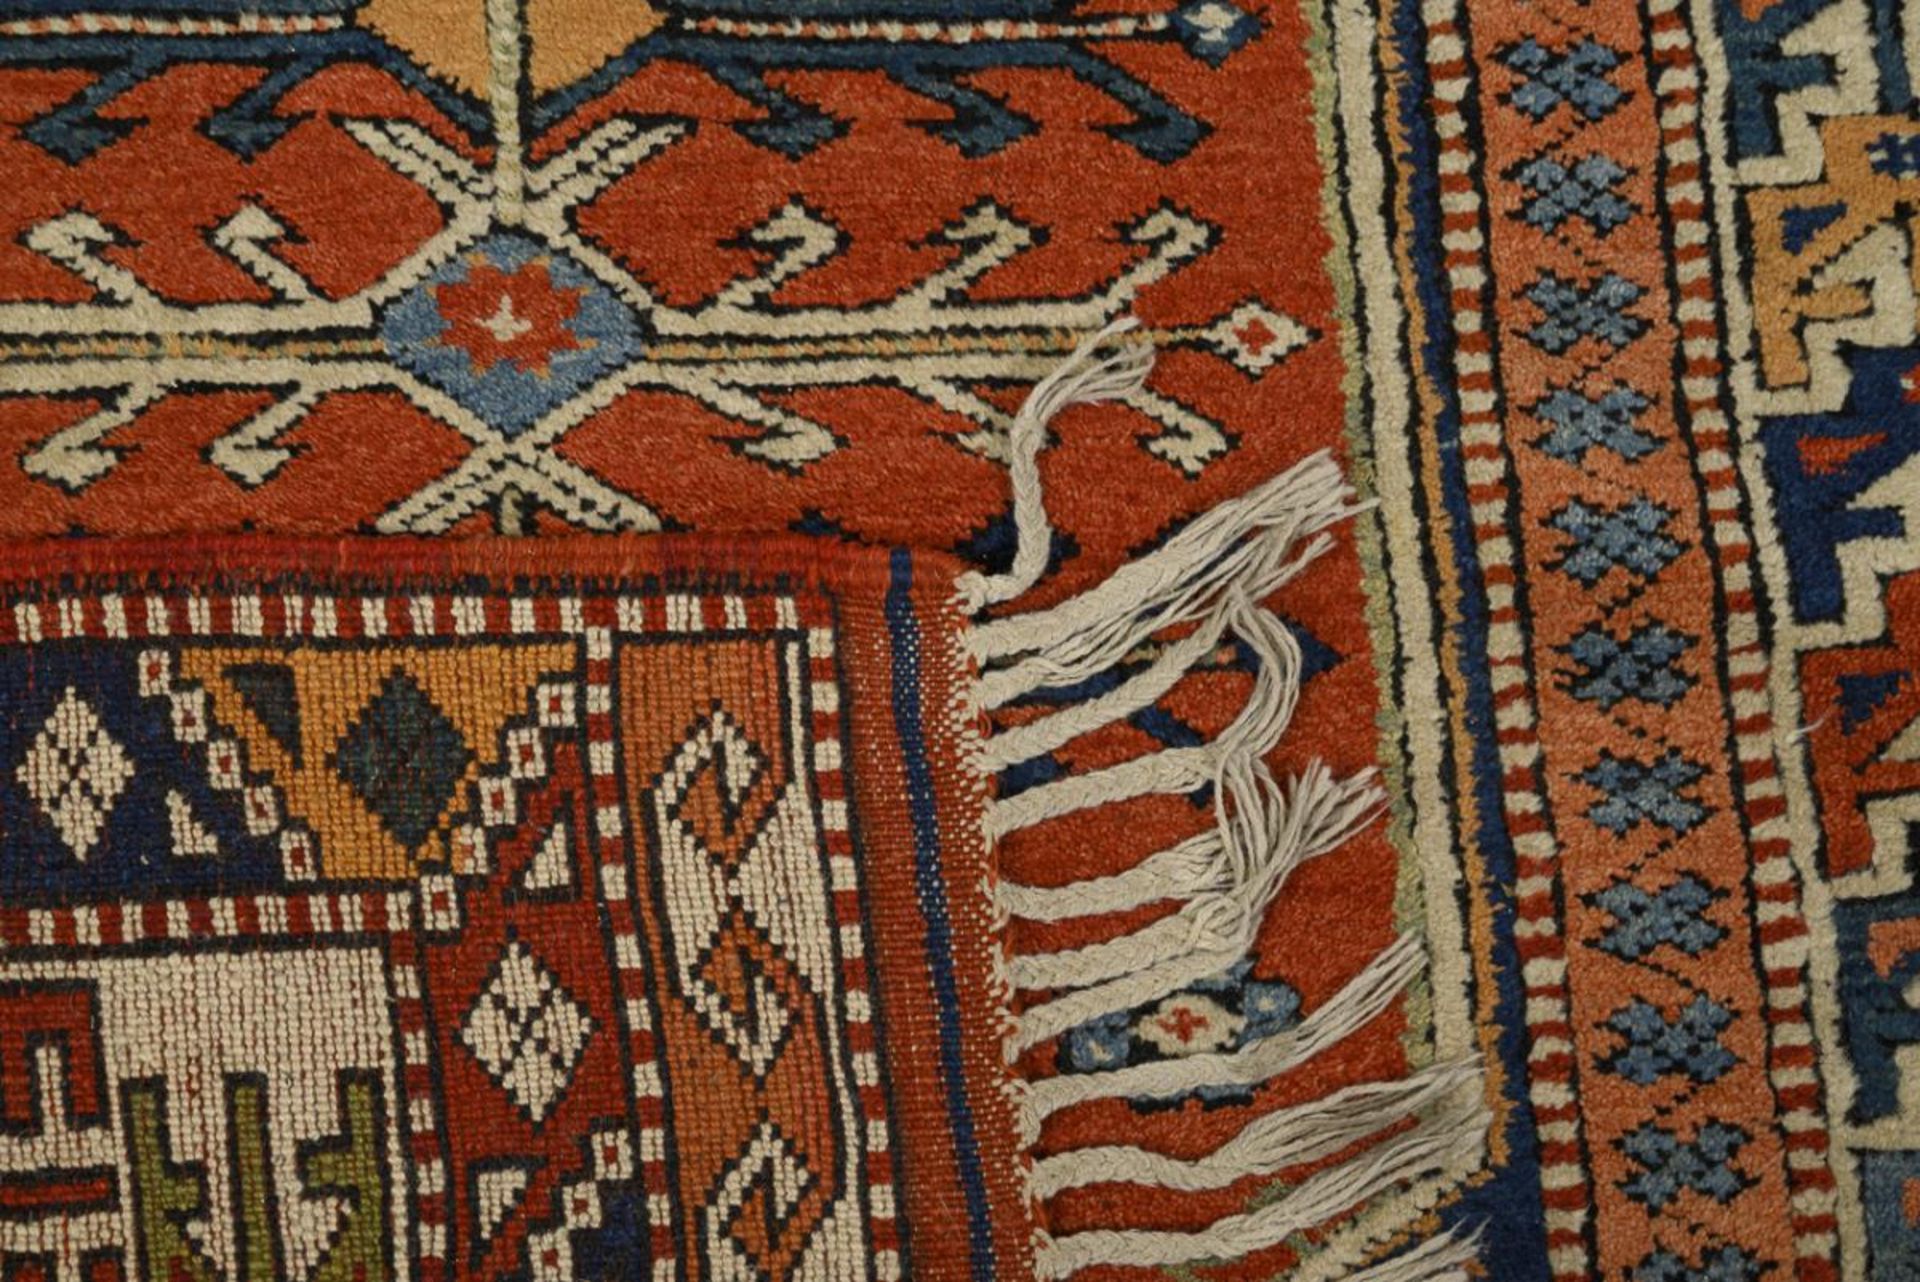 Qualitätvoller Teppich mit kaukasischem Dekor. - Image 2 of 2